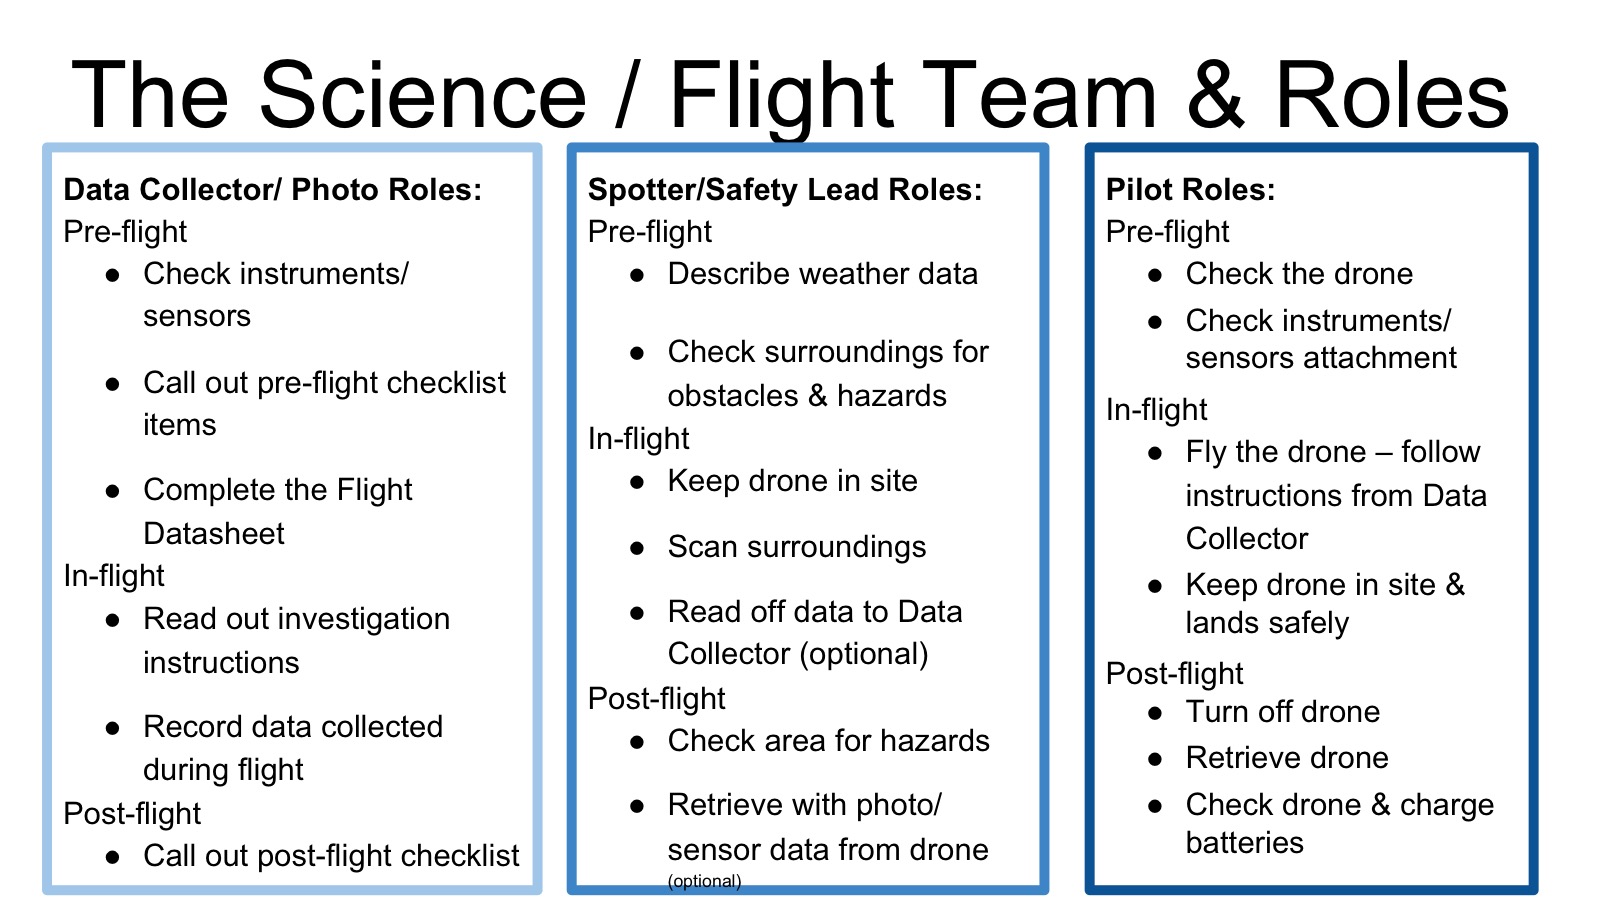 Science & flight team roles